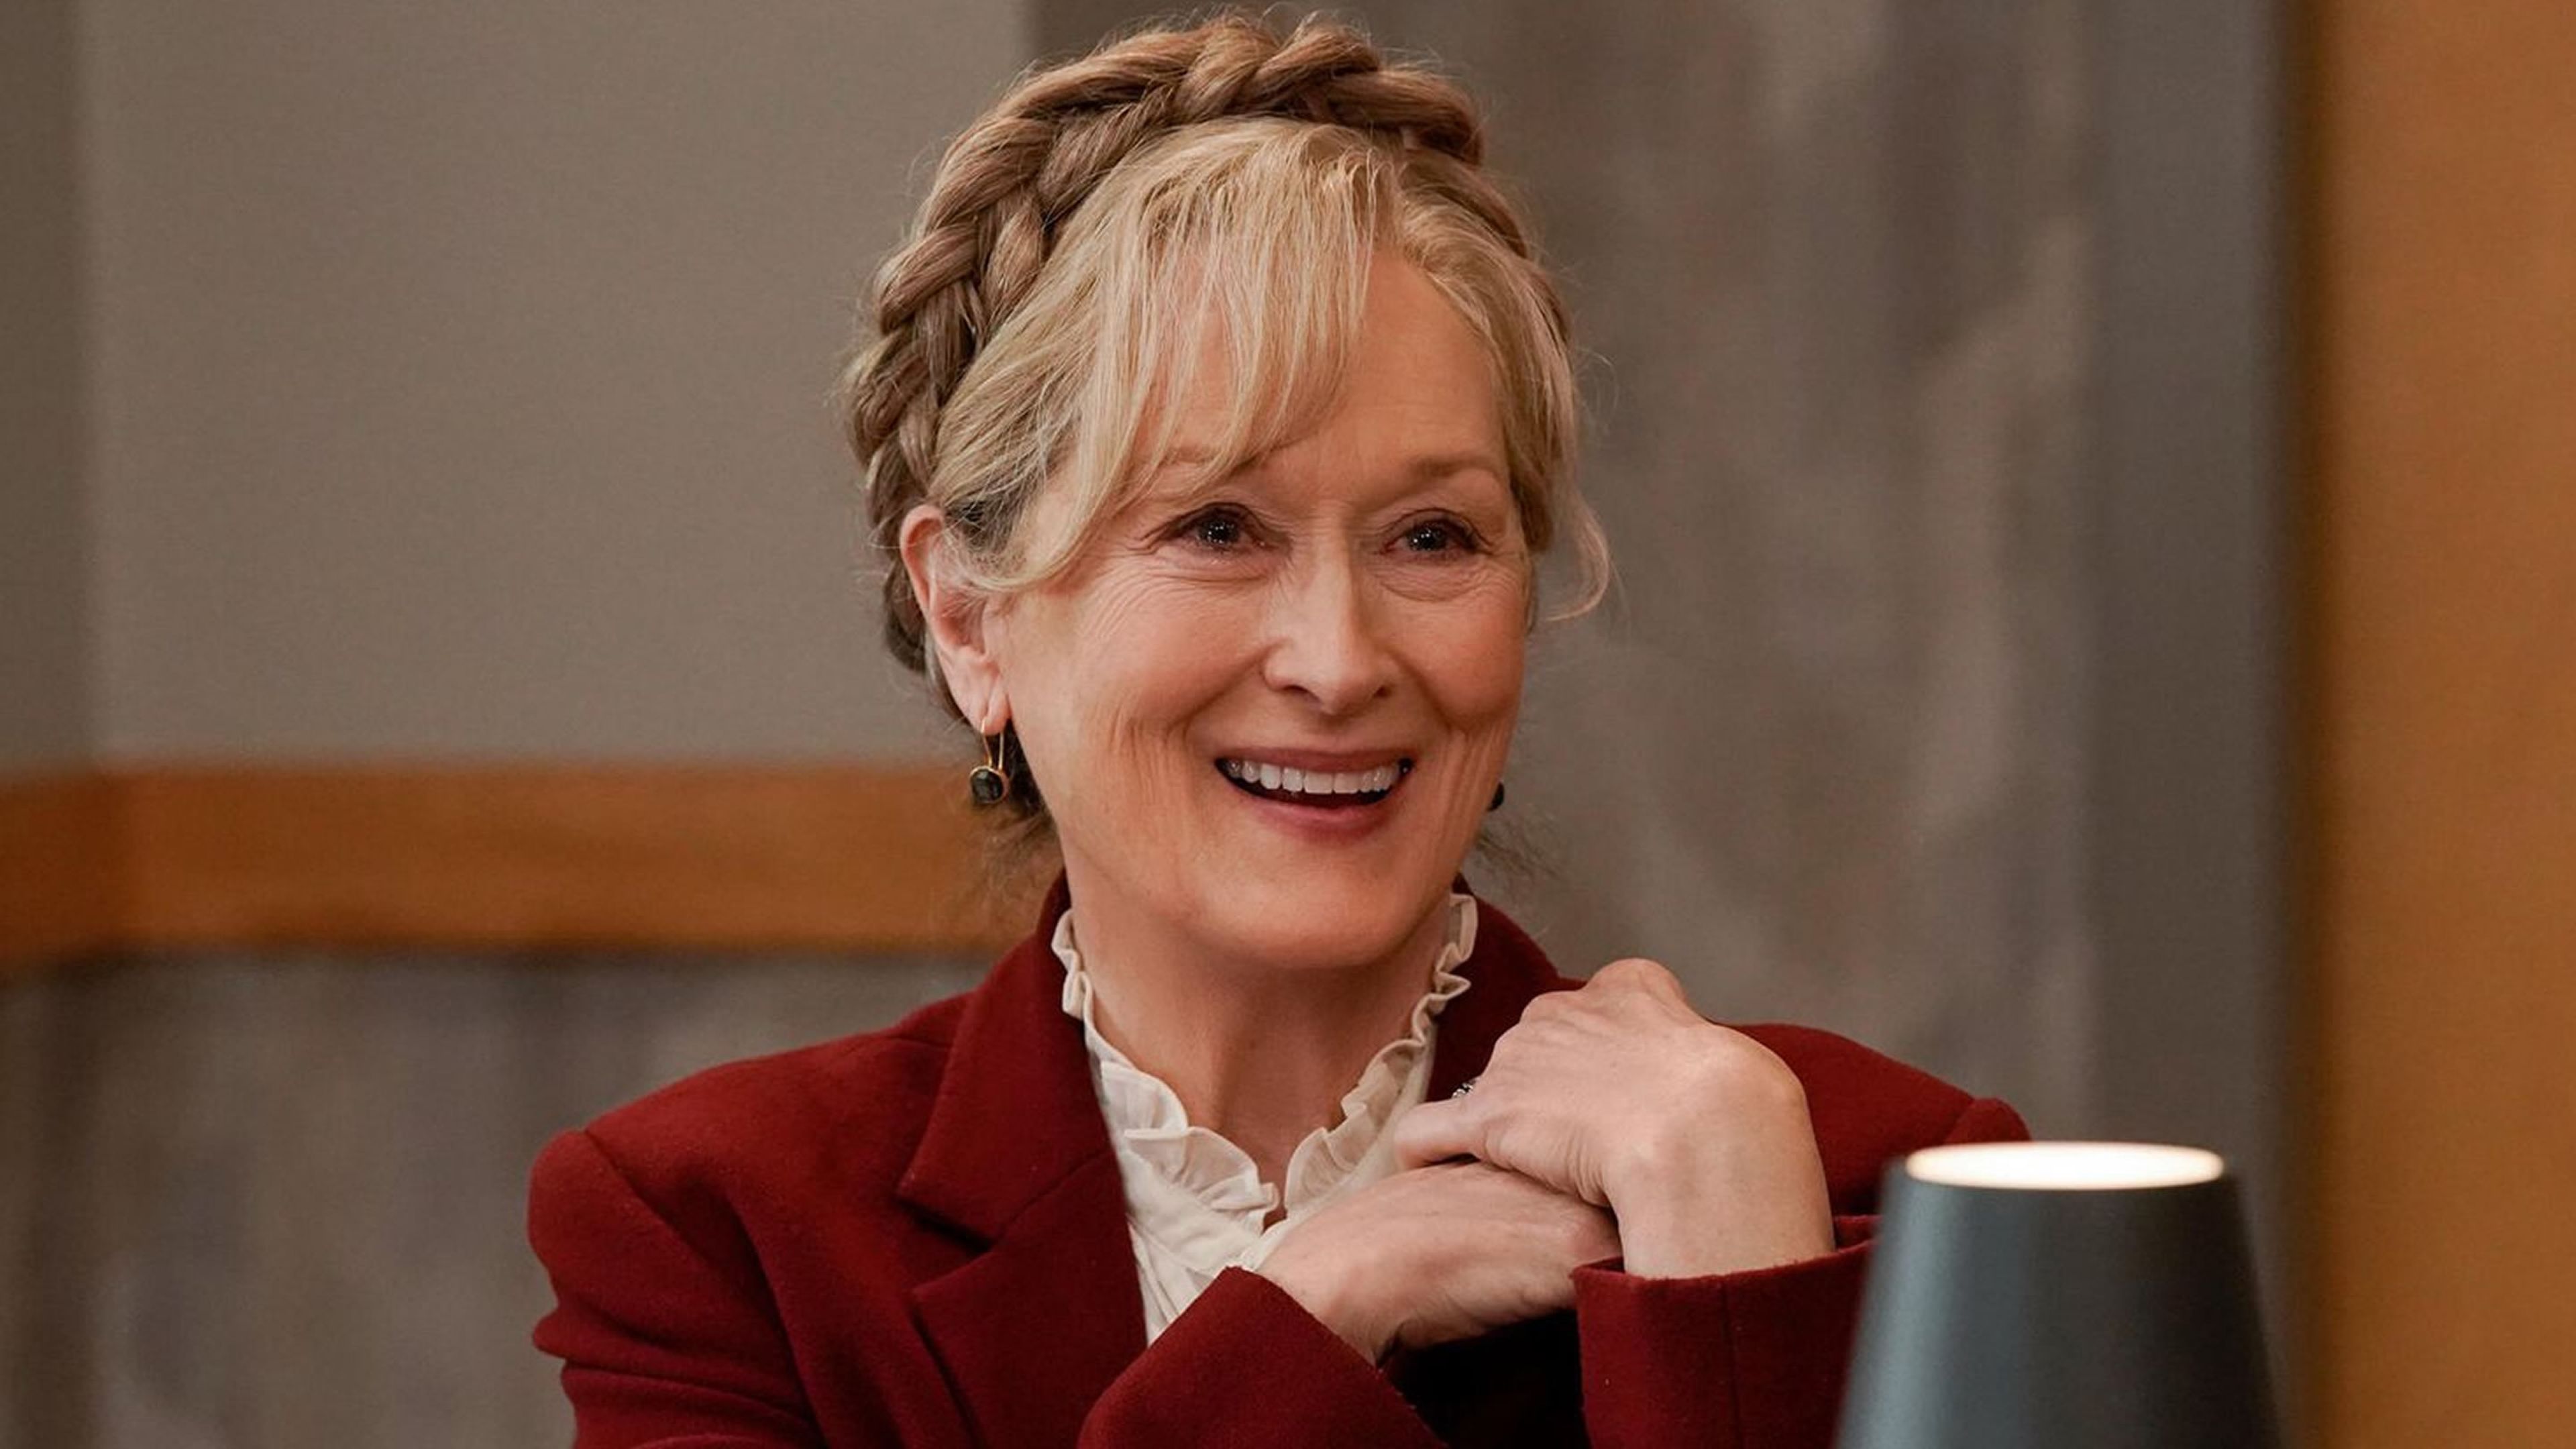 Solo asesinatos en el edificio, temporada 3 - Meryl Streep